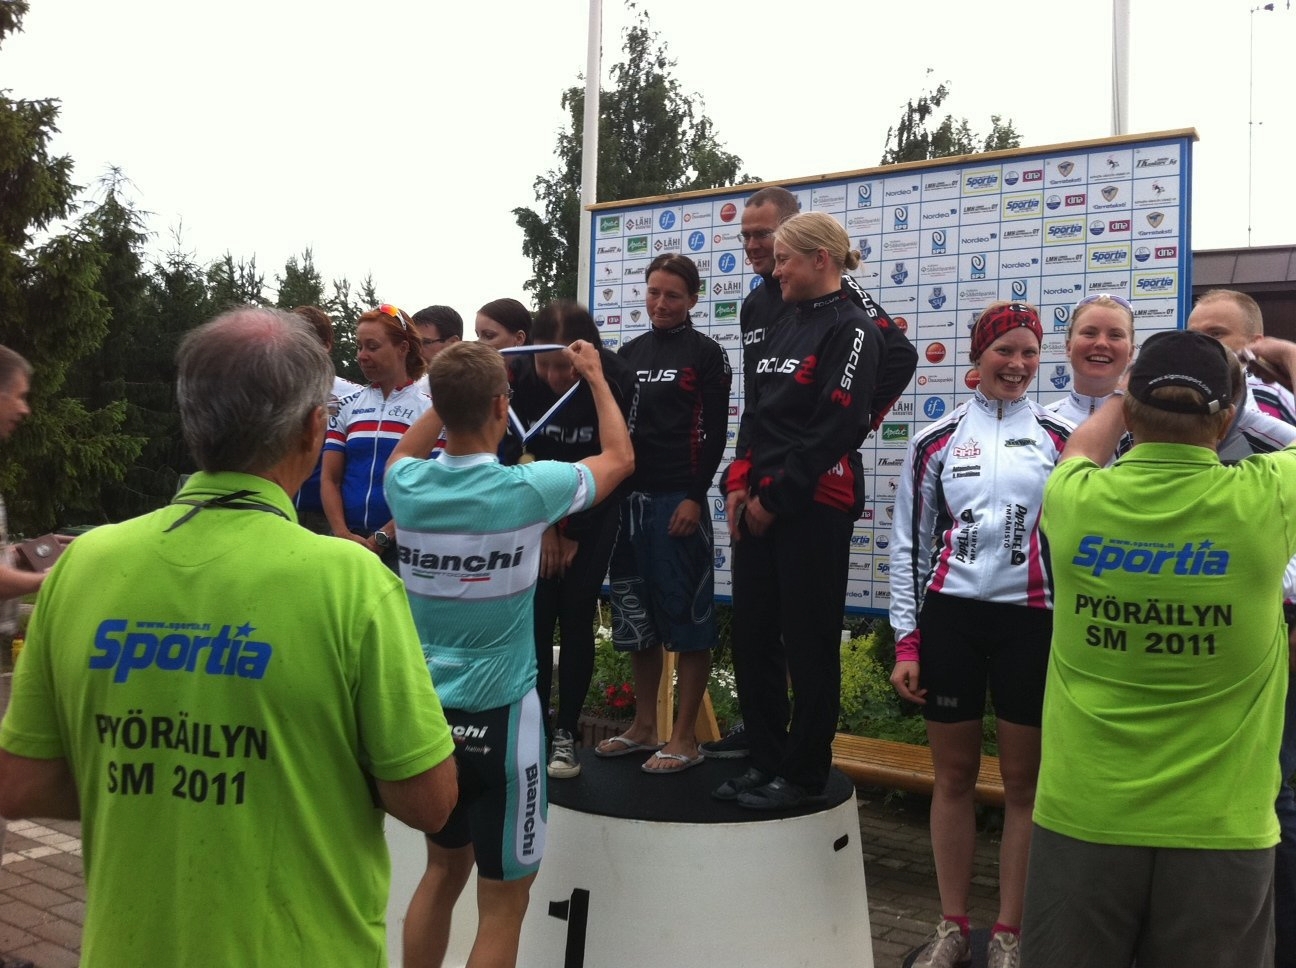 Team voitti naisten elite-luokan joukkuekilpailun Suomen mestaruuden jo kolmantena vuonna peräkkäin. Tällä kertaa vajaan kolmen minuutin erolla seuraavaan. Joukkueessa polkivat Merja Kiviranta (kolmas vuosi peräkkäin henkilökohtainen SM-pronssi aika-ajossa), Riikka Pynnönen (6:s) ja Laura Lilja (7:s). Naisten kilpailun ylivoimainen ykkönen oli GIF:n Pia Sundstedt. N18-luokassa Vilma Alanko täydensi teamin tämän päiväisen mitalisuoran ottamalla SM-hopeamitalin.